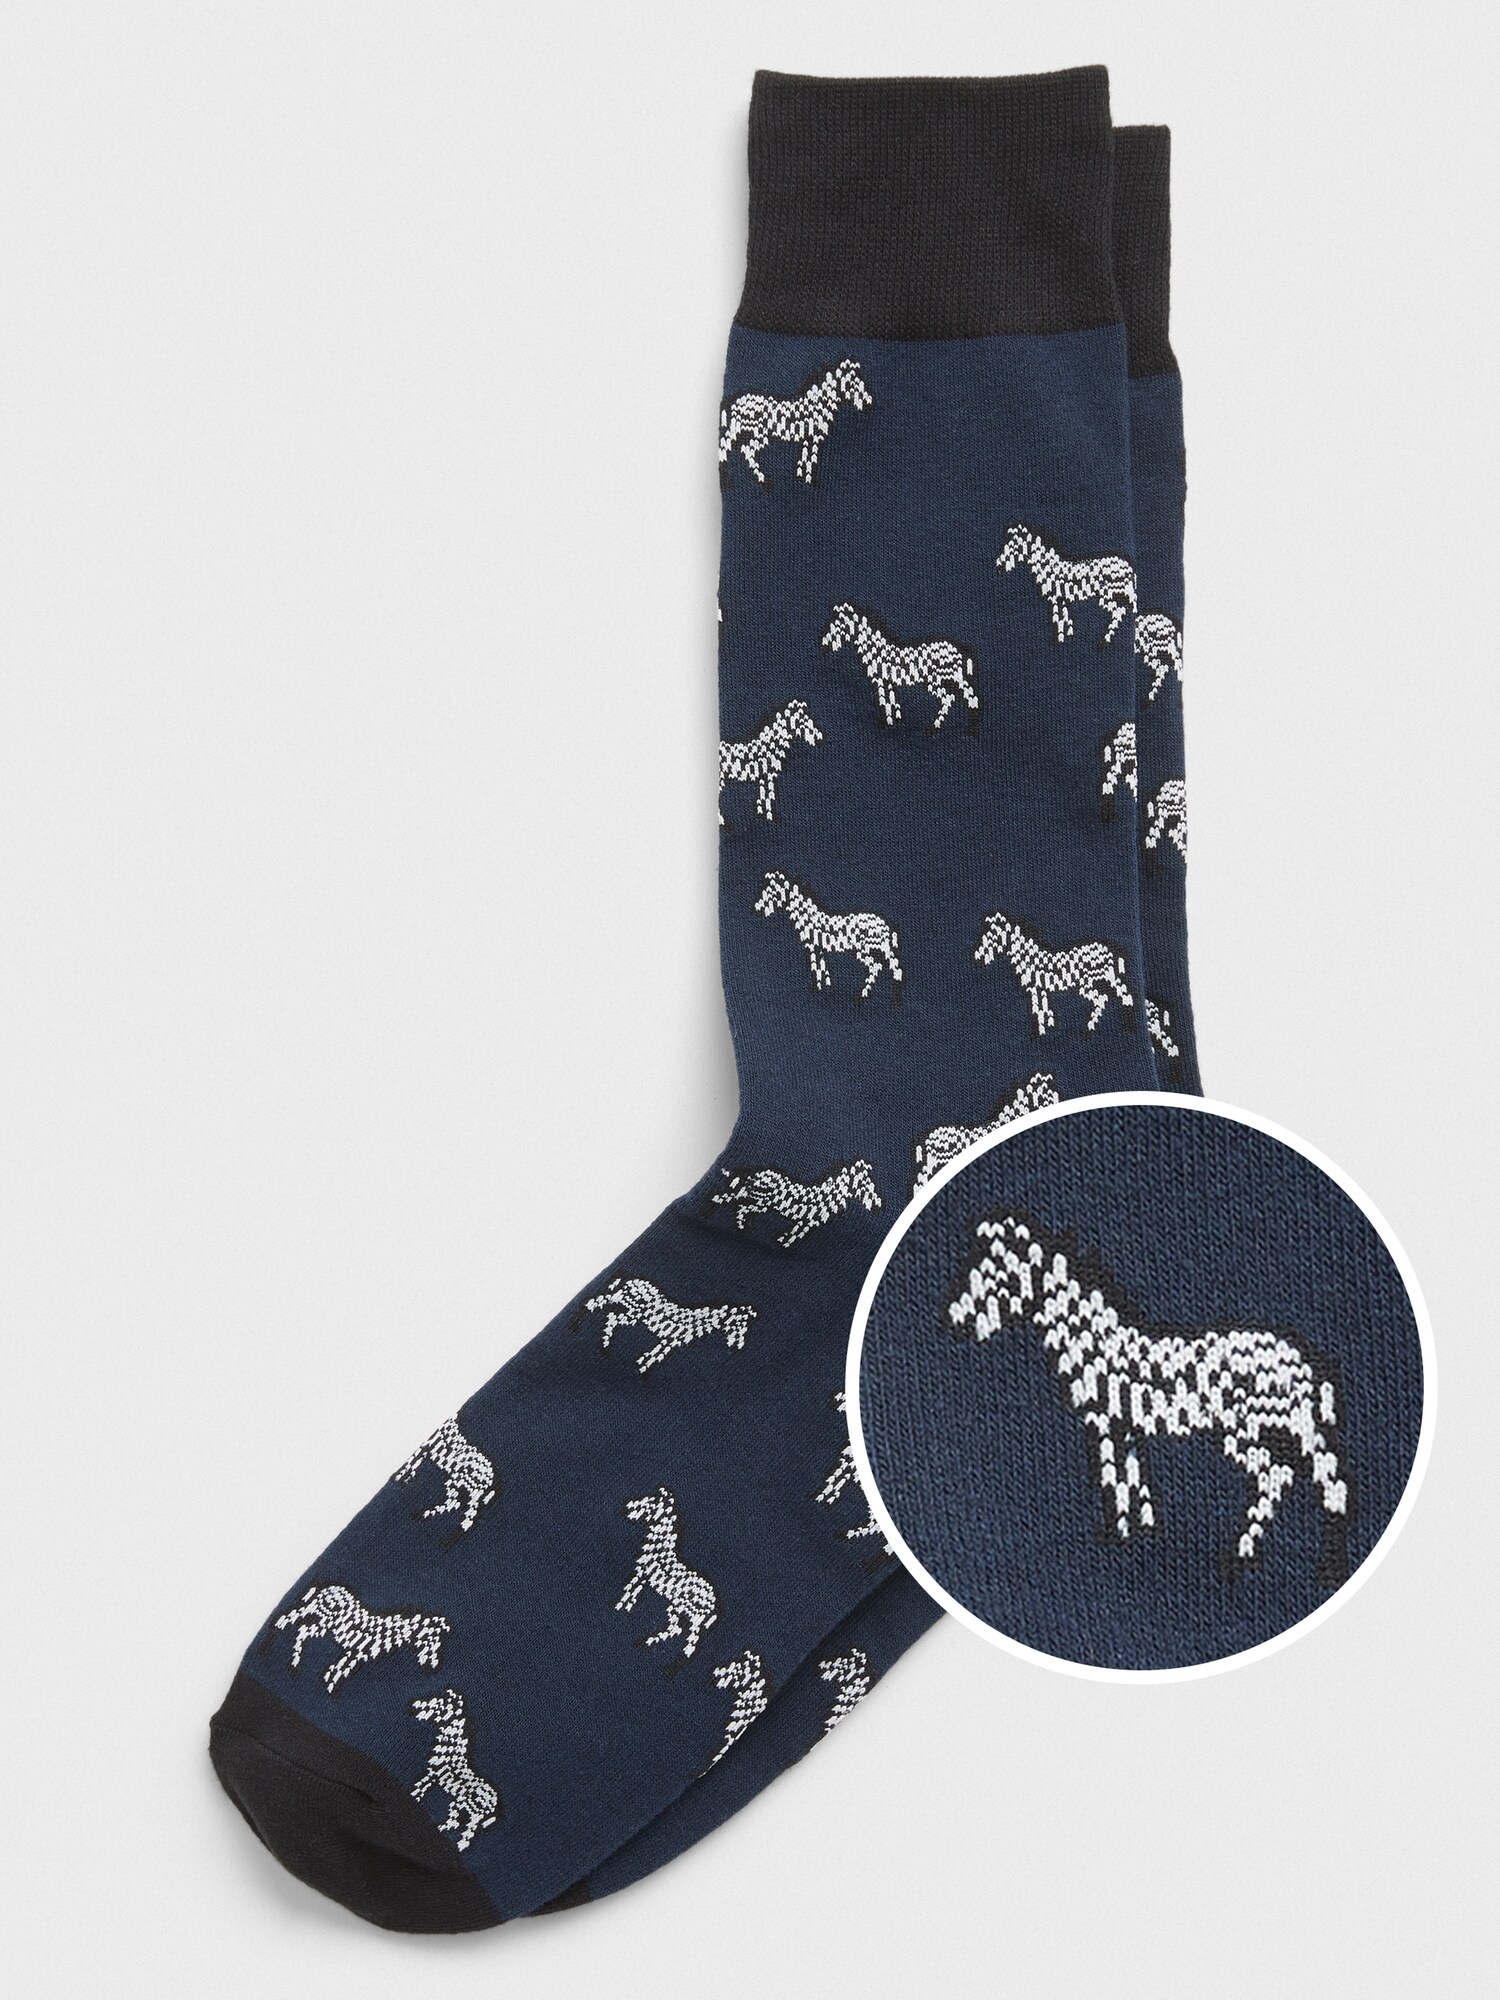 zebra socks